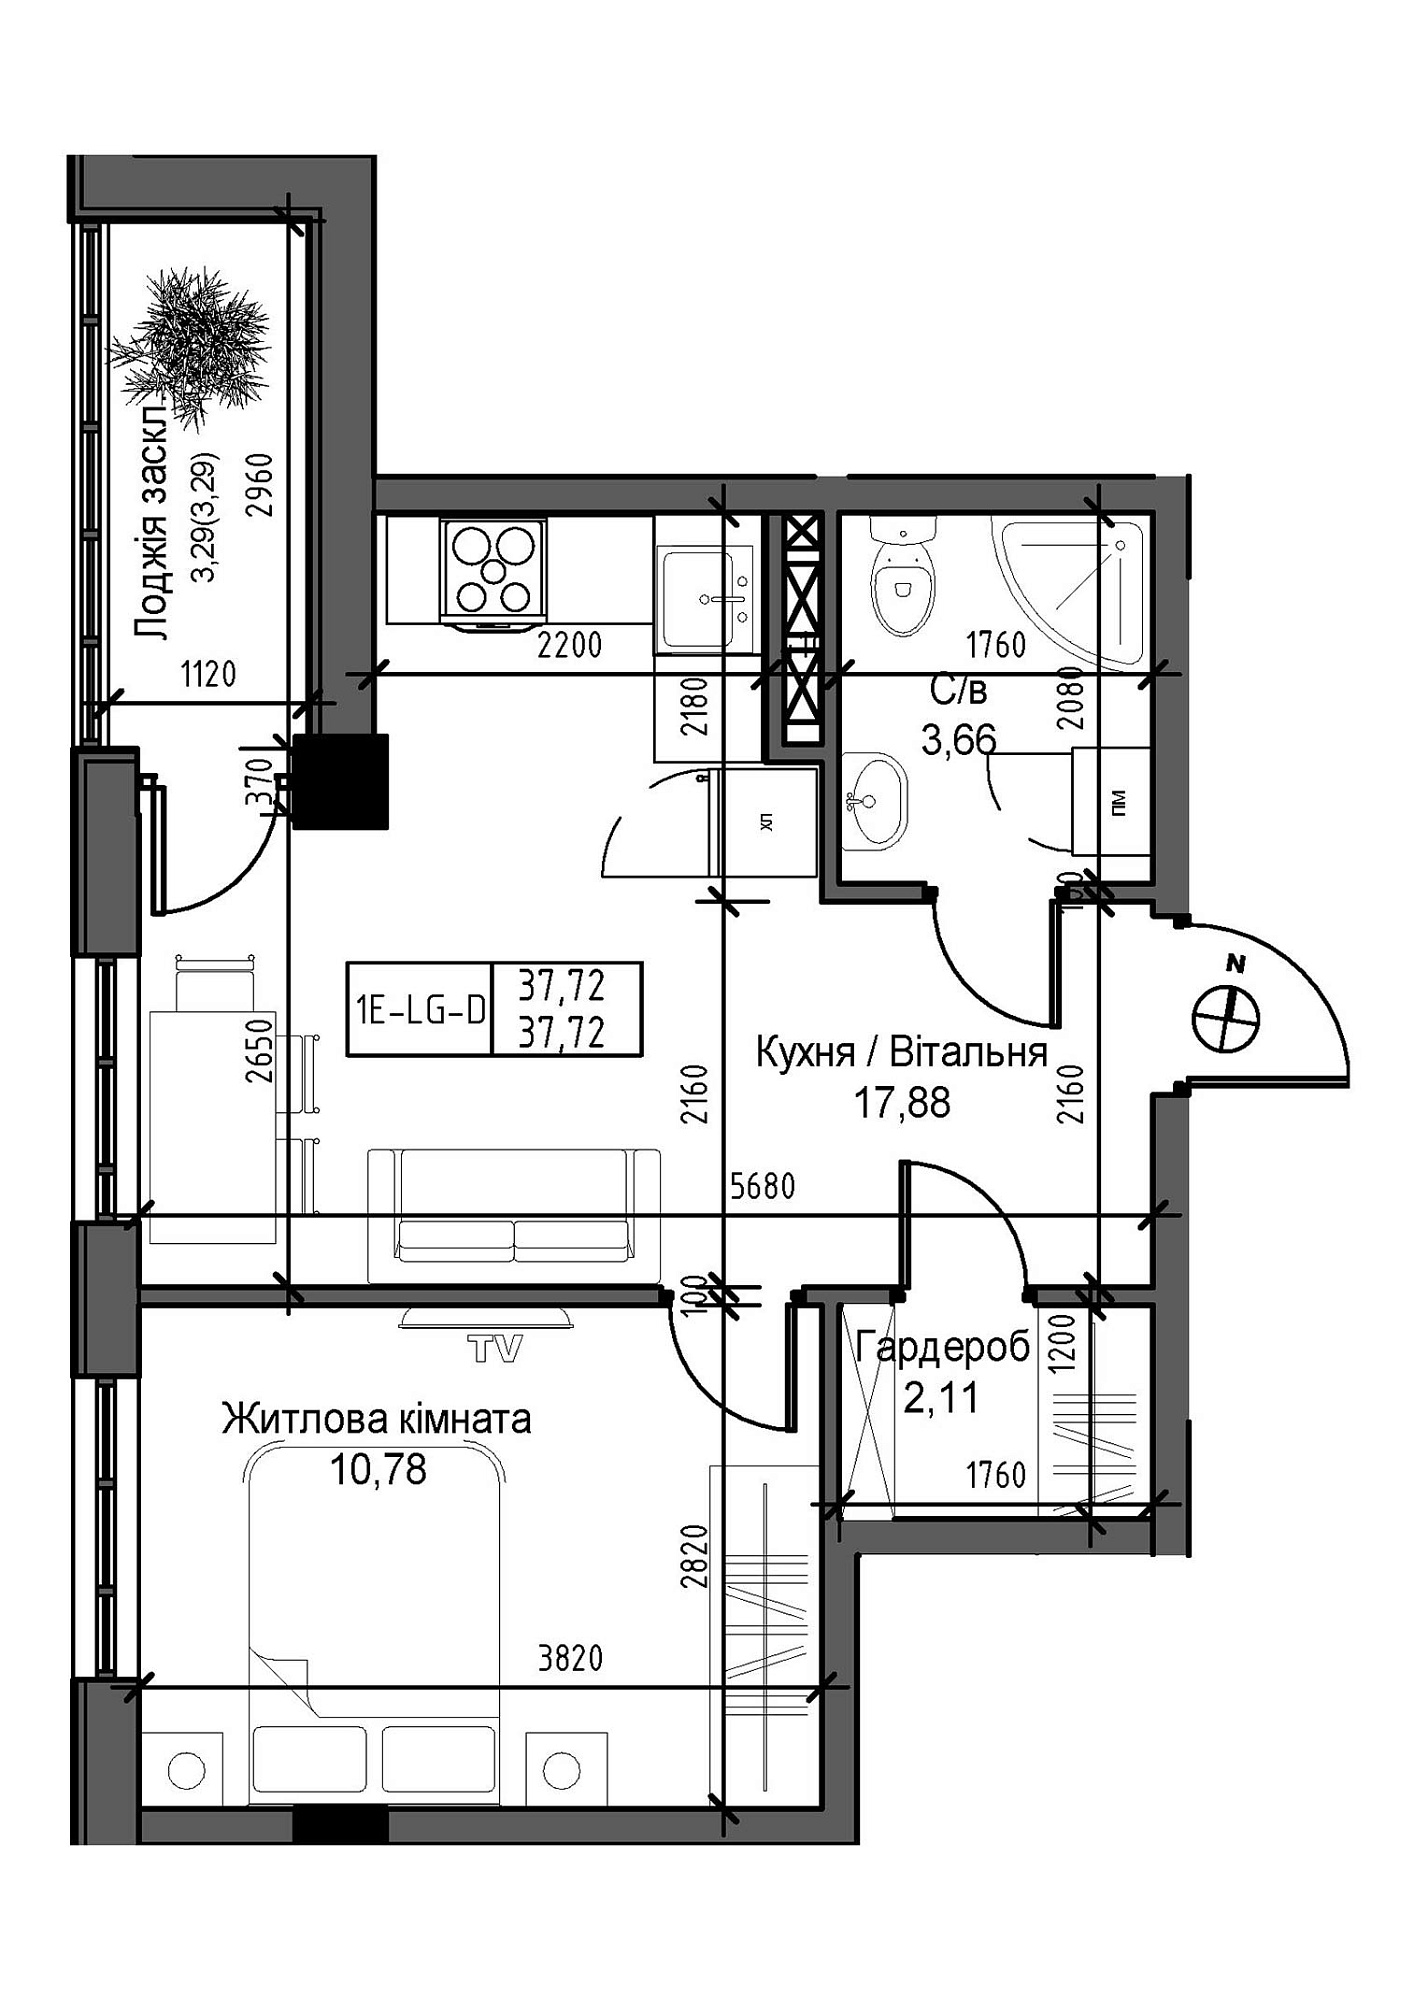 Планировка 1-к квартира площей 37.72м2, UM-007-03/0011.